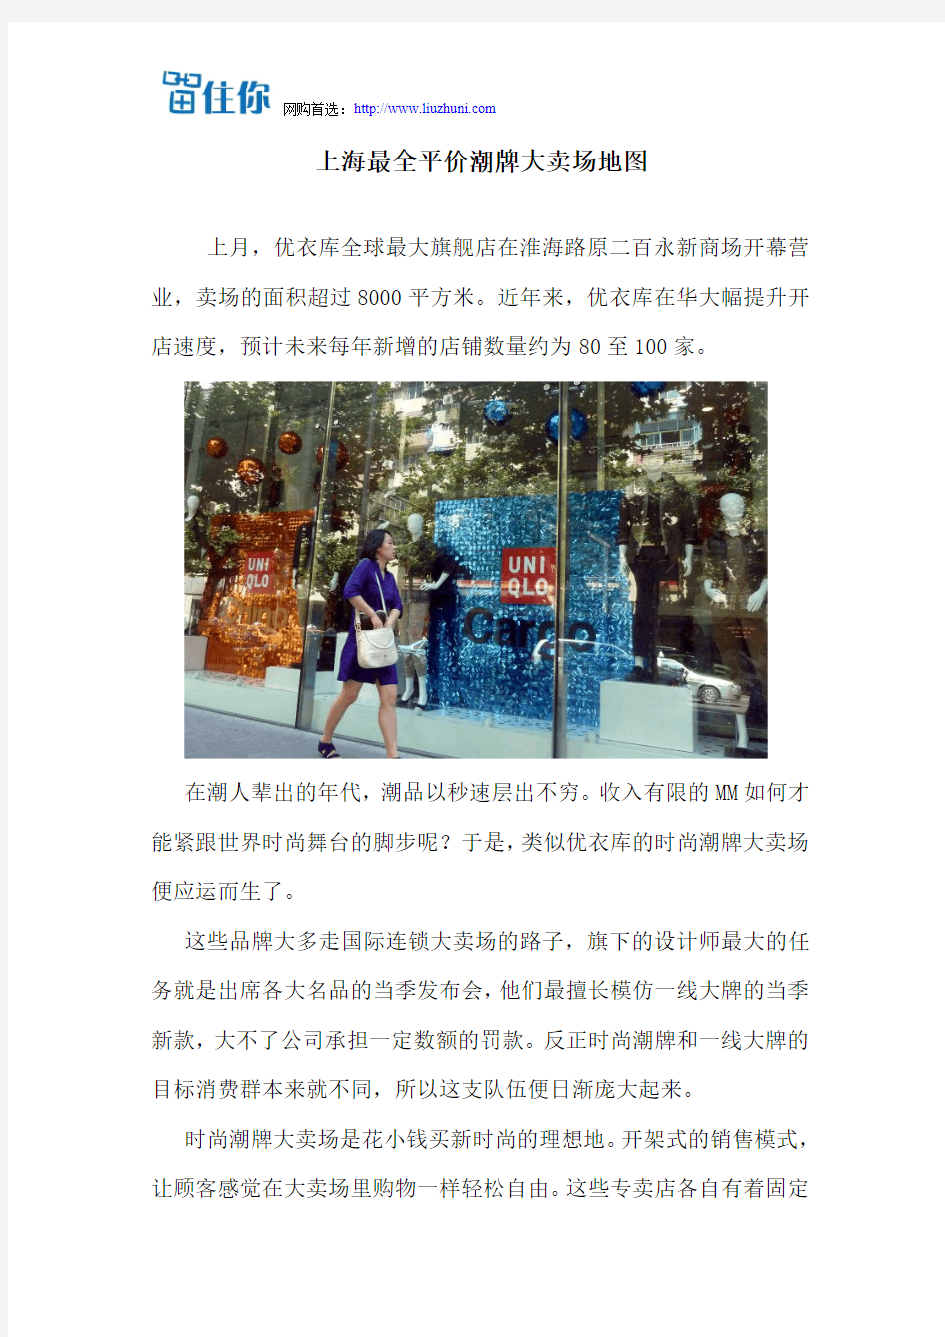 上海最全平价潮牌大卖场地图